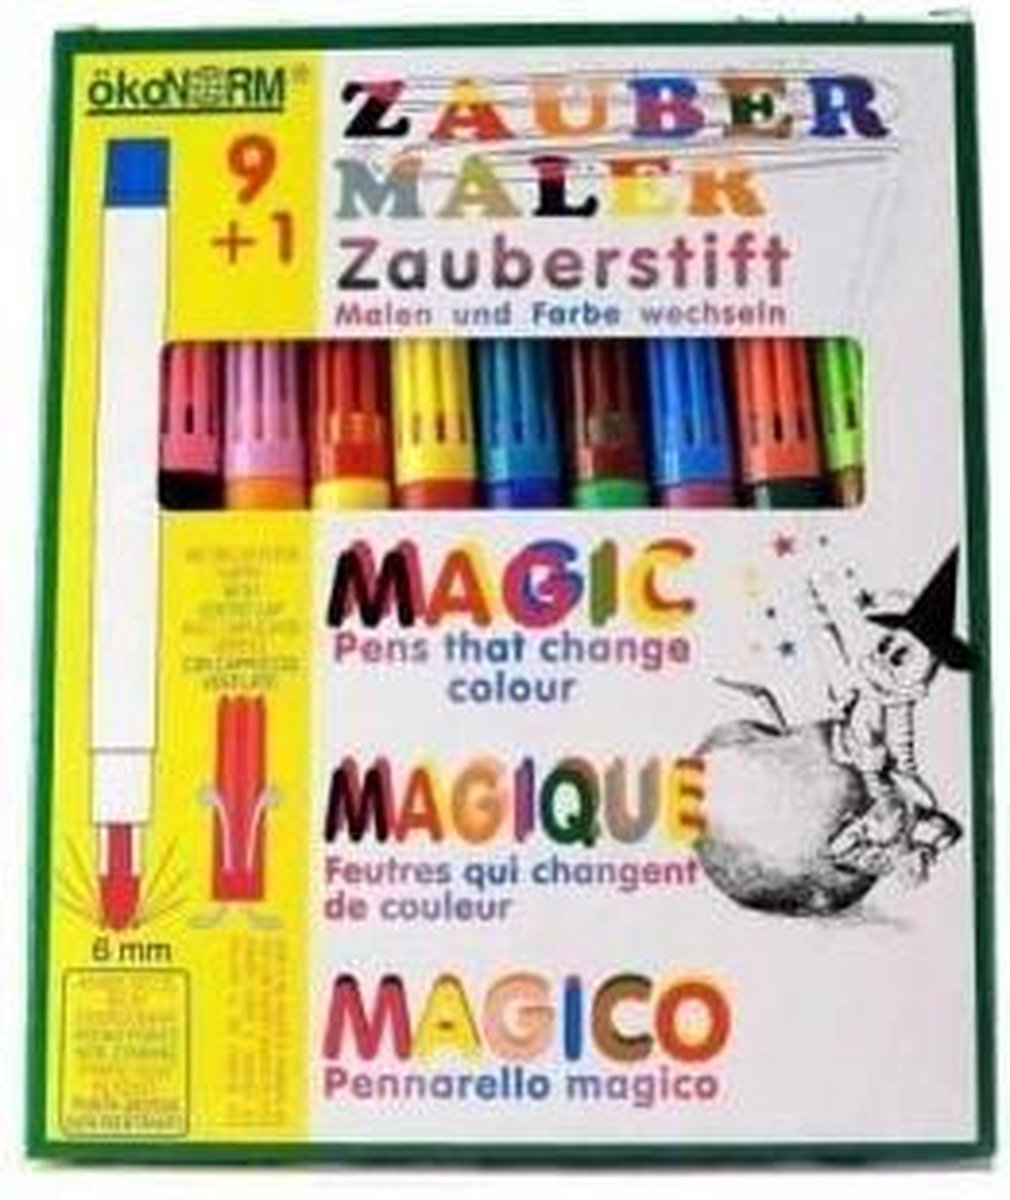 Oekonorm - Magic pen schrijvers - 9 stuks + 1 magie pen - Kindvriendelijk - Natuurlijk - Milieuvriendelijk